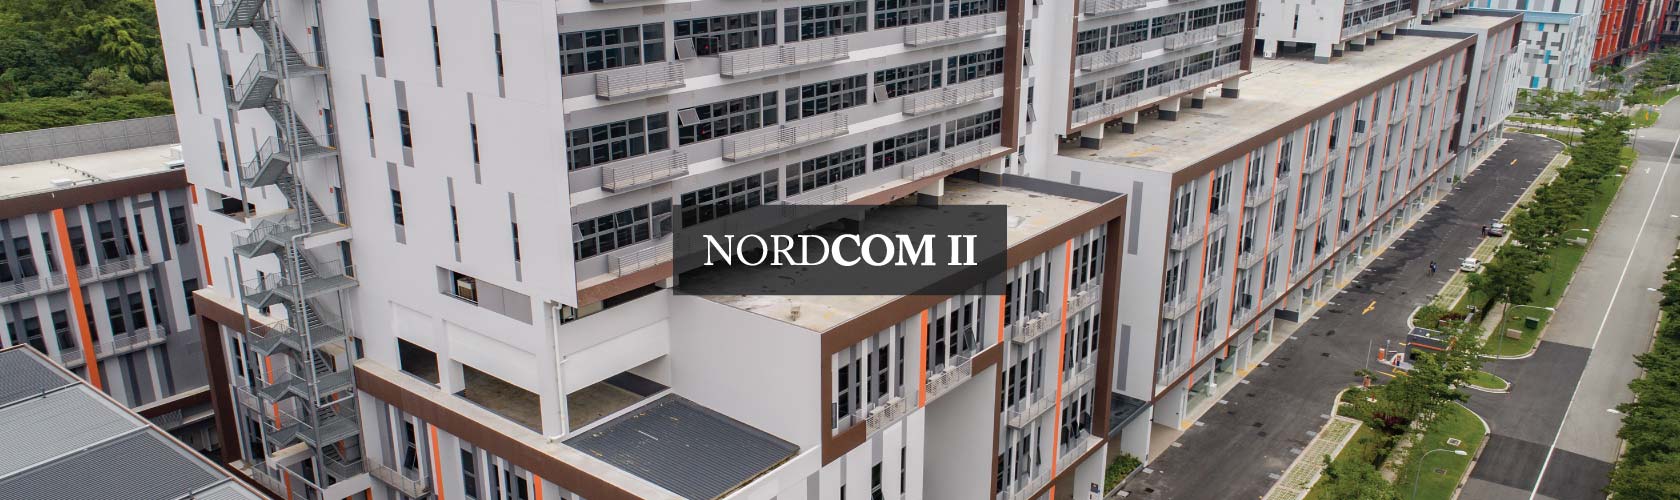 Nordcom II Facade